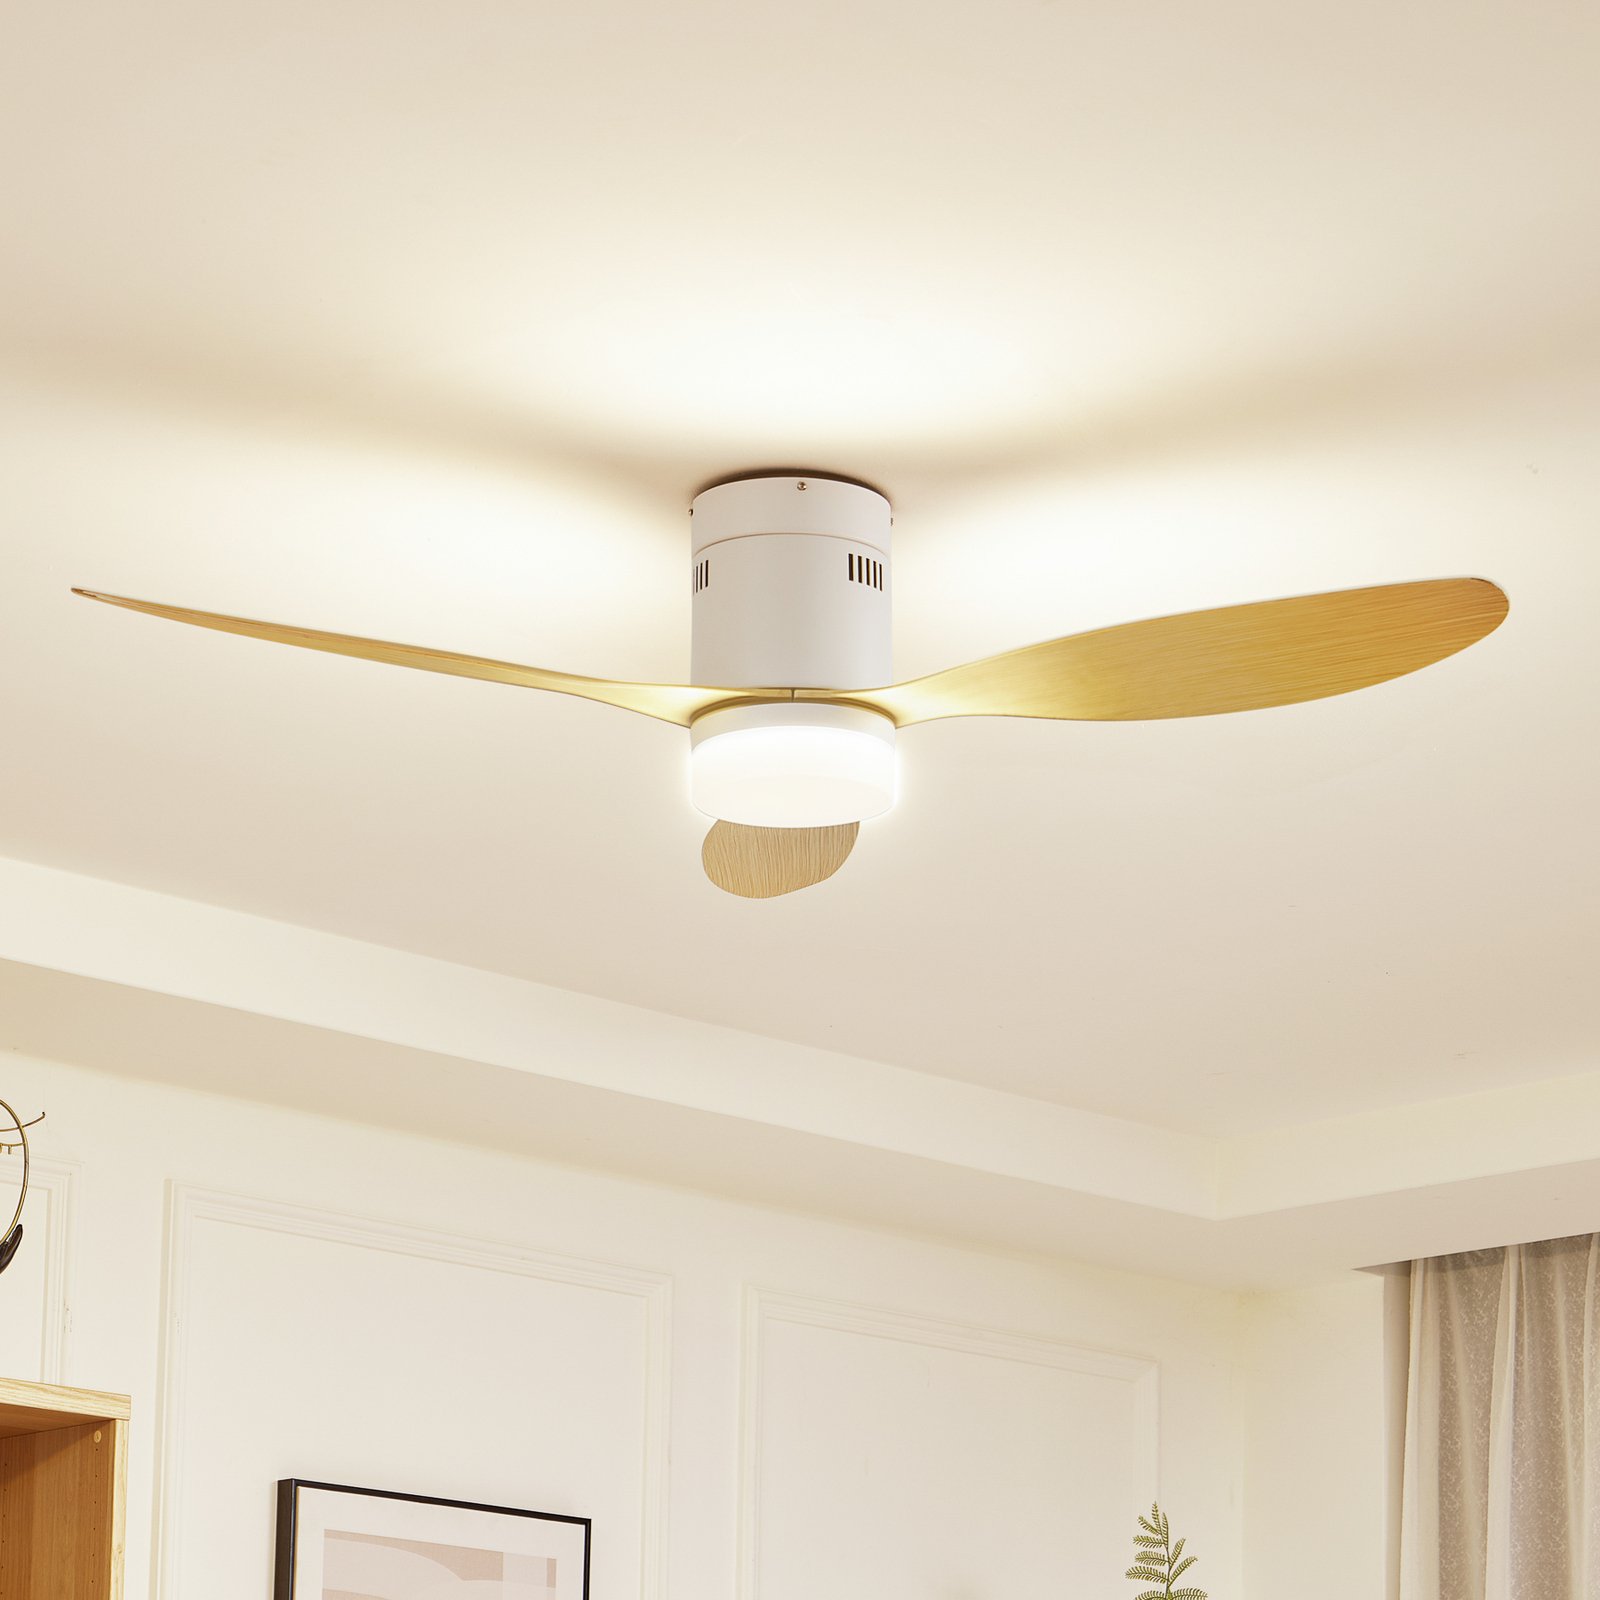 Lucande LED ceiling fan Kayu, white, DC, quiet, 132 cm